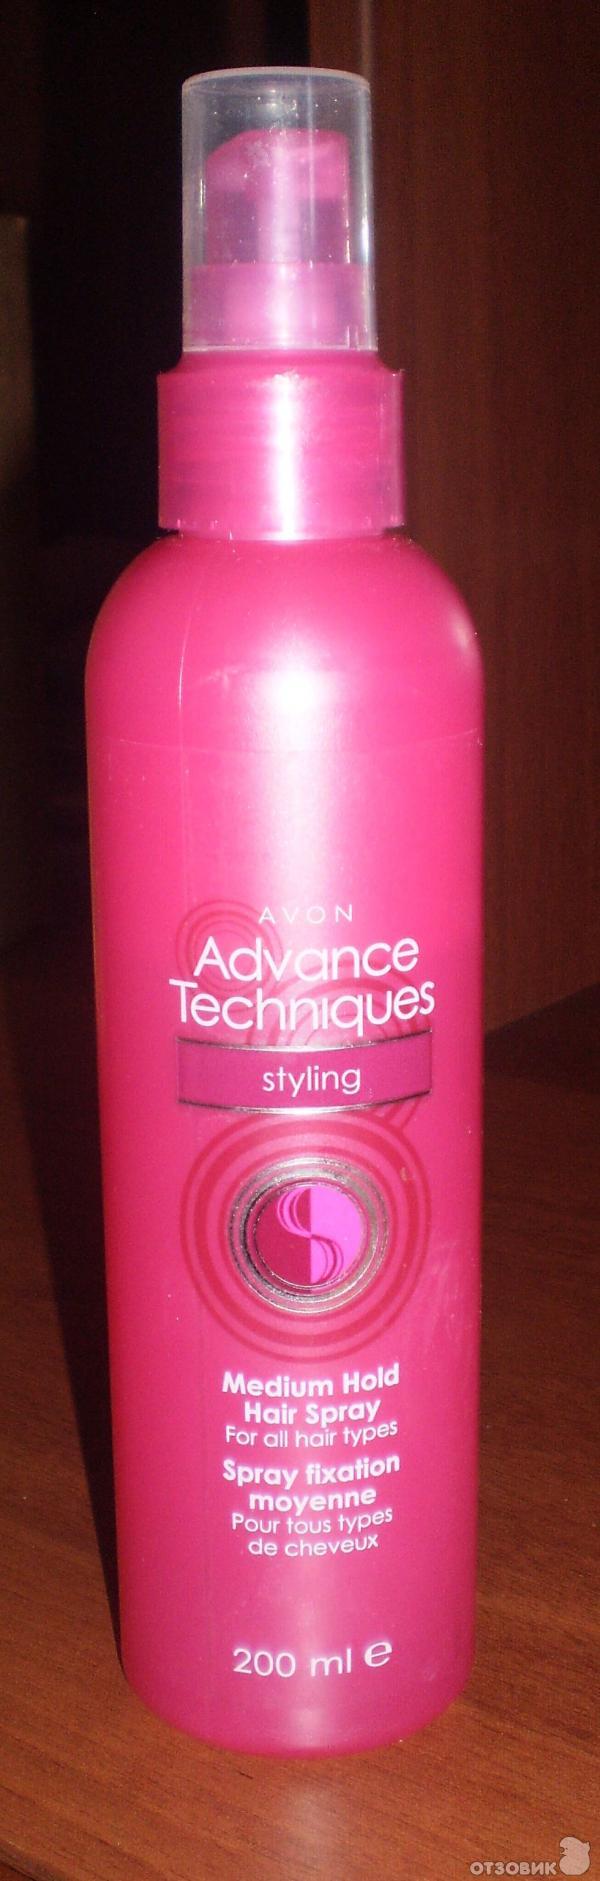 Розовый флакон для волос. Спрей для волос Avon Advance techniques. Advance techniques гель спрей. Спрей эйвон в розовом флаконе. Термозащита для волос розовый флакон.